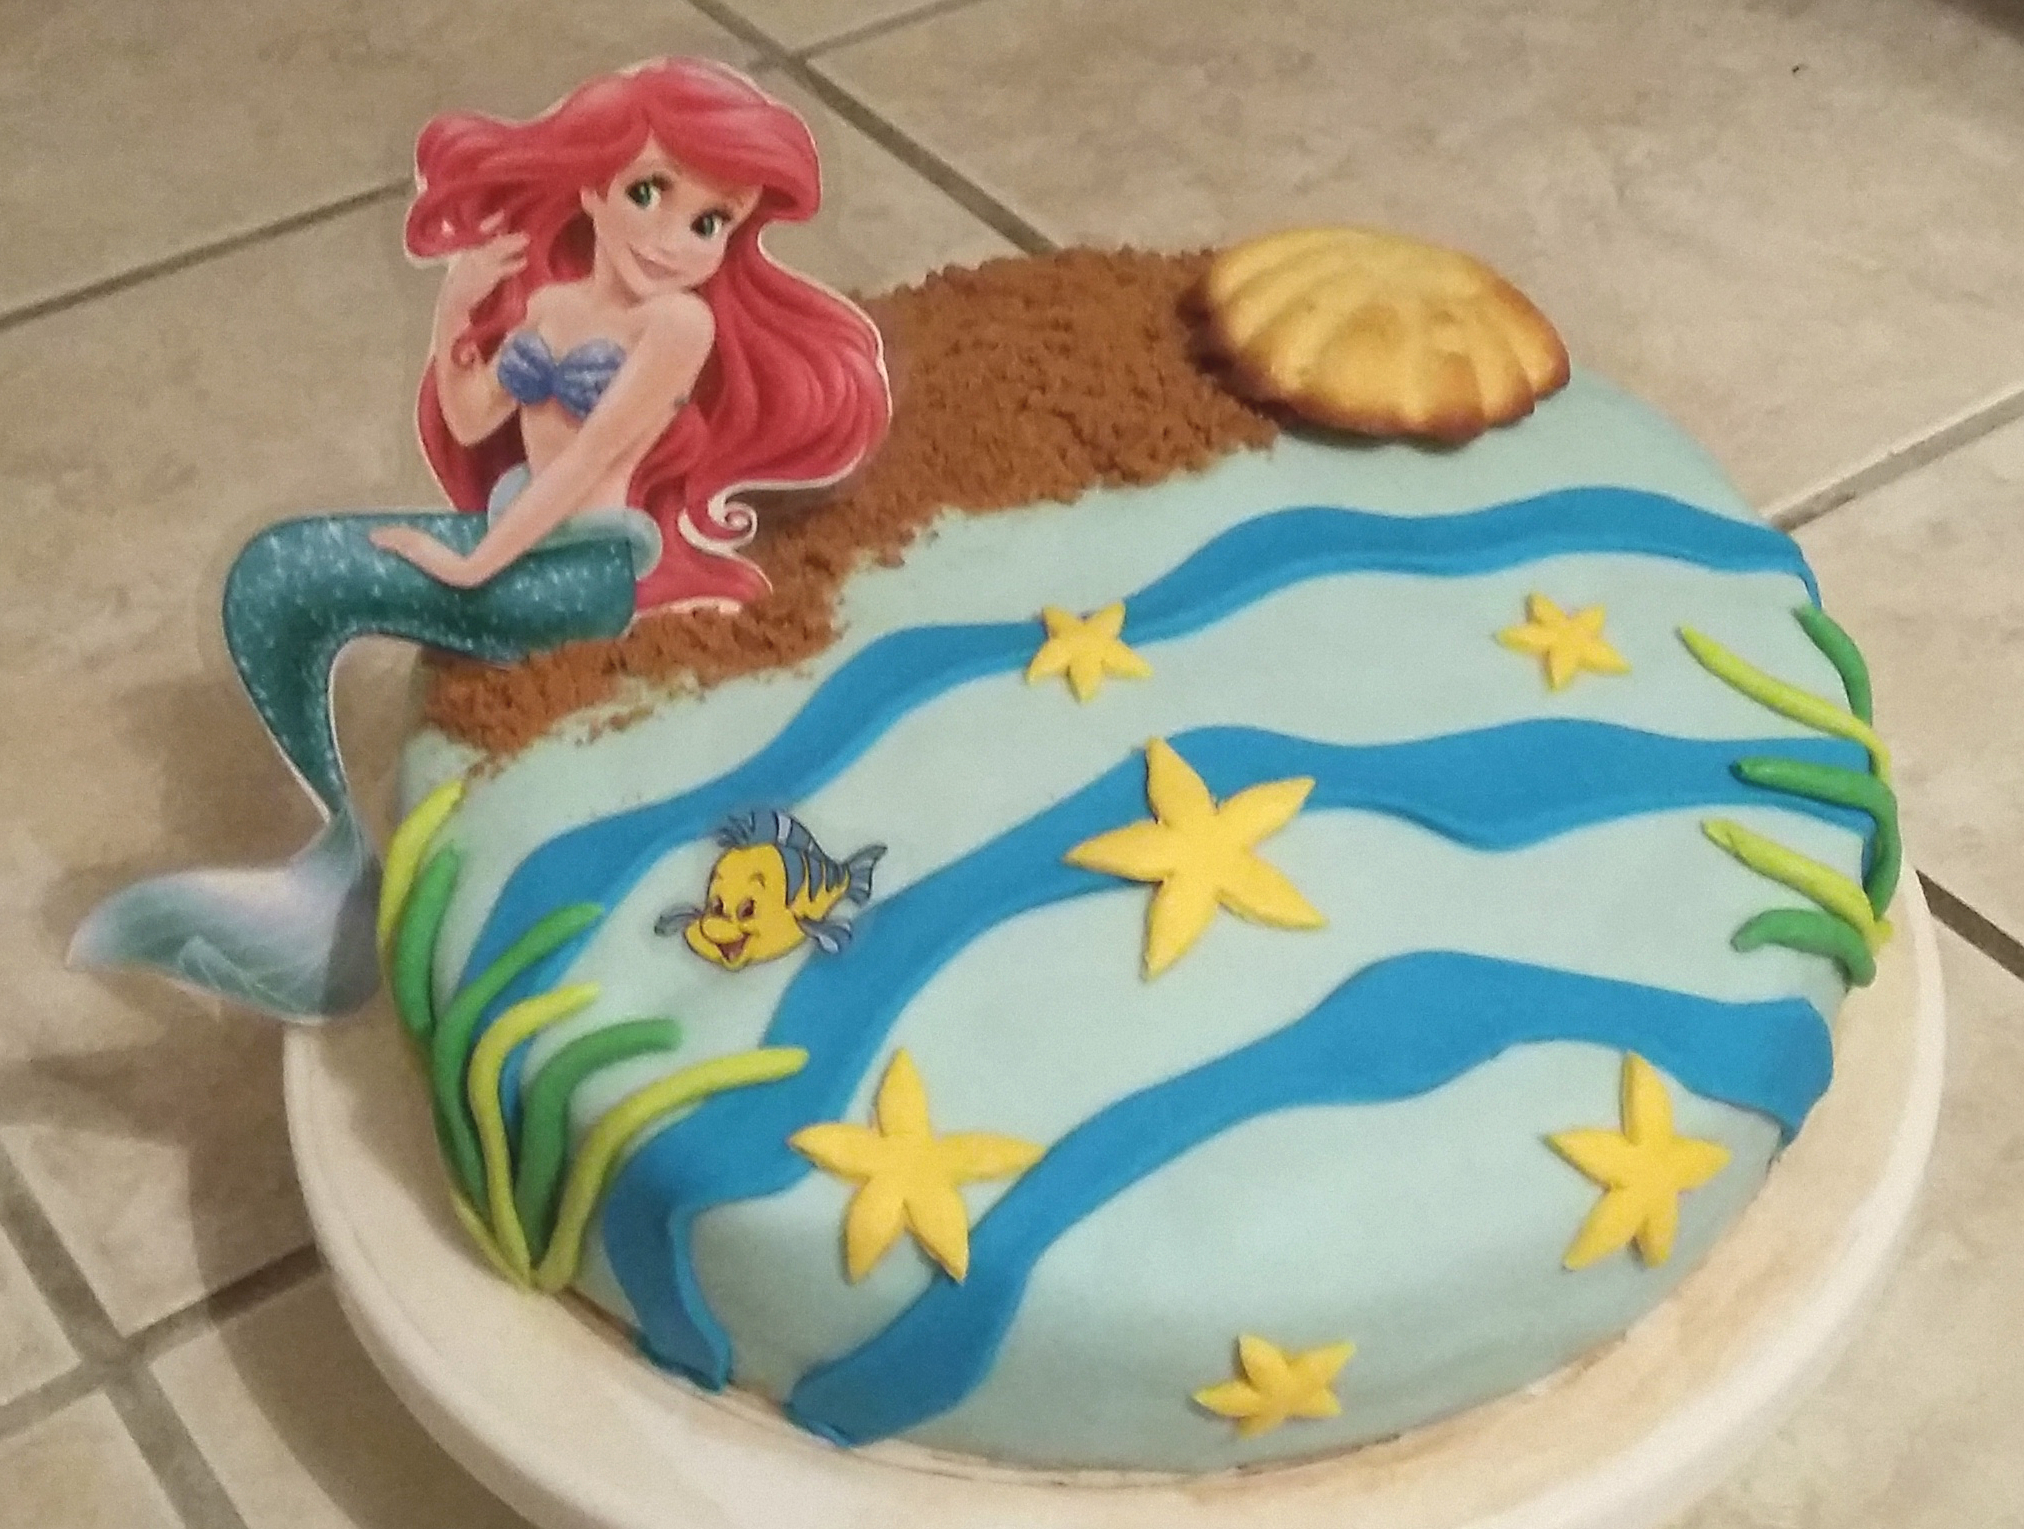 Gâteau Ariel la petite sirène annso-cuisine.fr